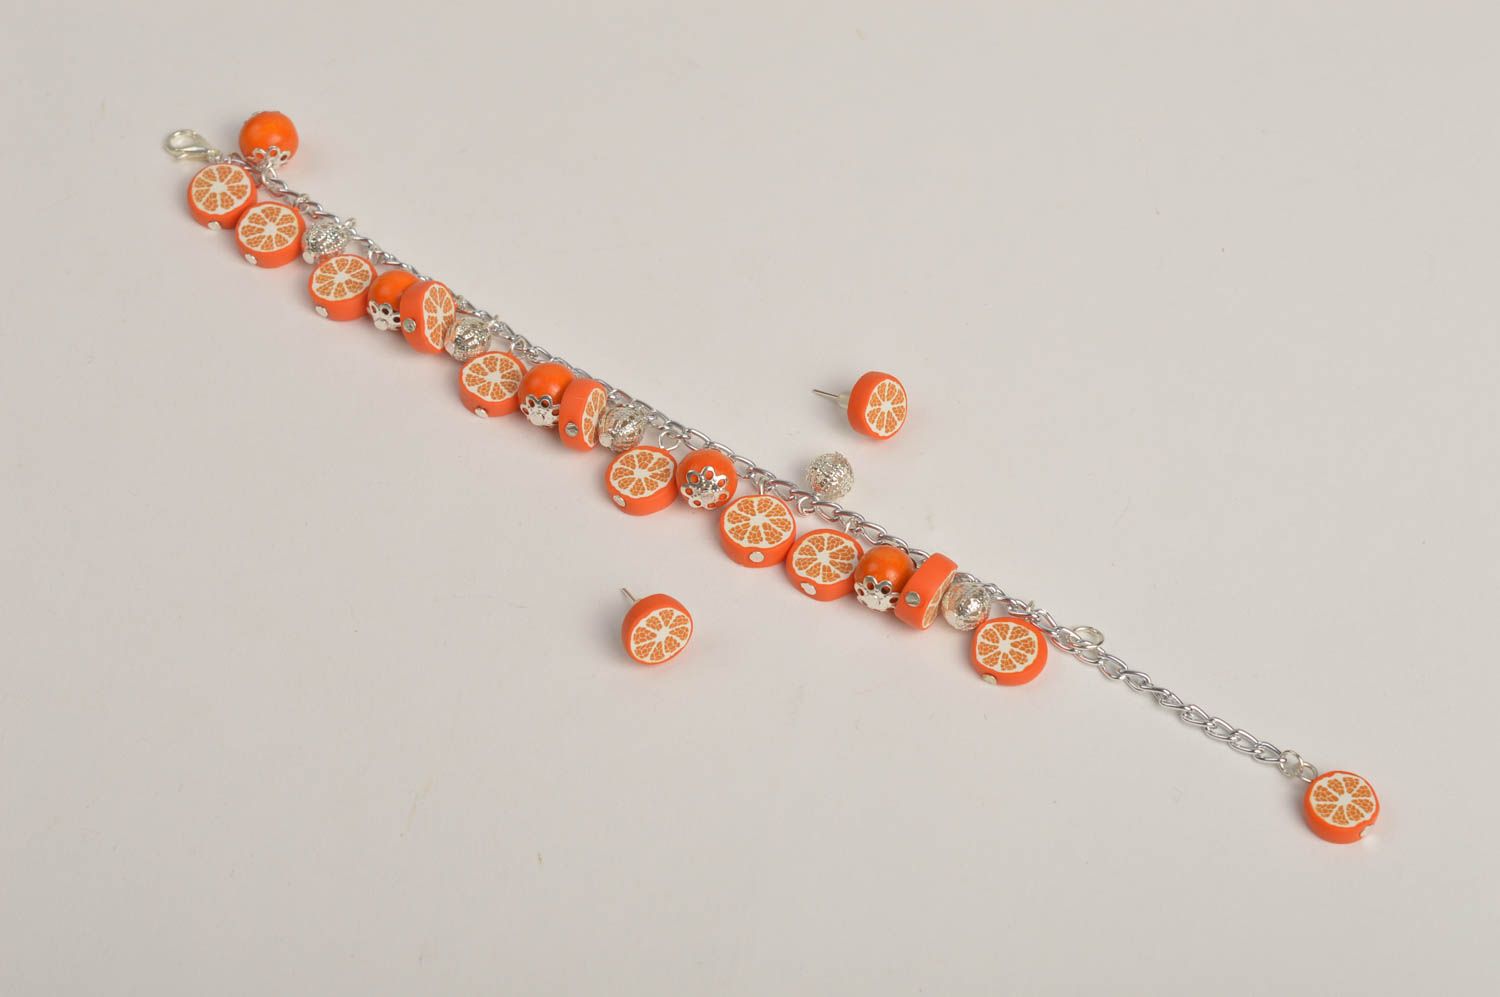 Wrist bracelet fashion earrings polymer clay jewelry oranges women jewelry  photo 5